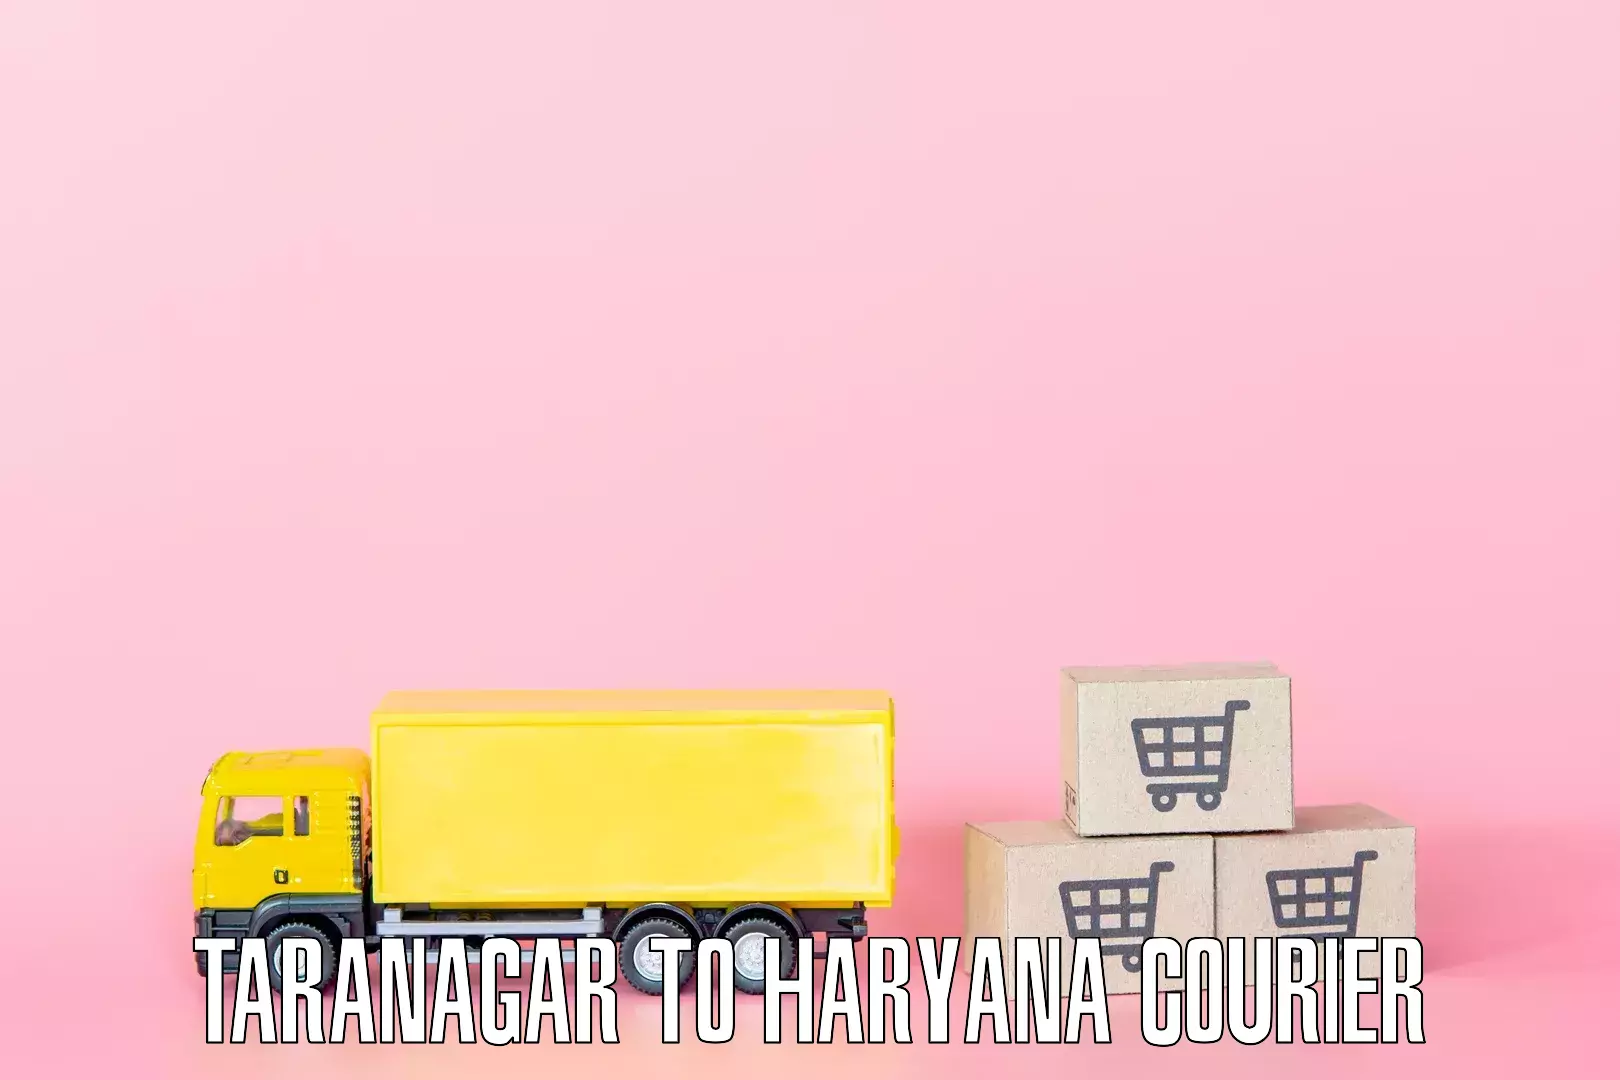 Home goods transport Taranagar to Faridabad